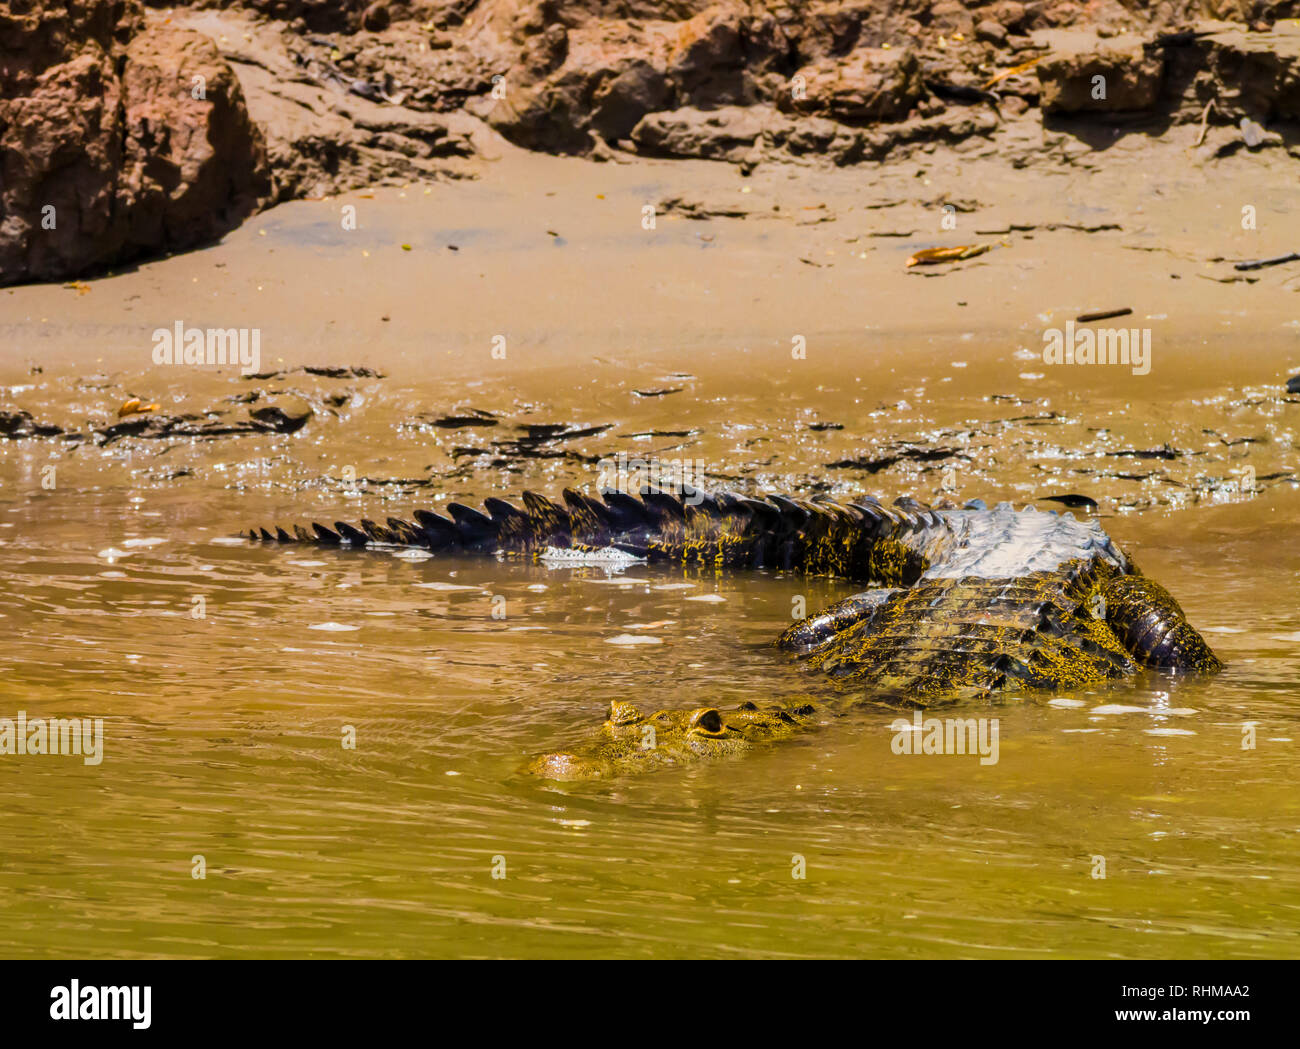 Crocodile immergersi in acqua per lanciare un attacco su una preda, fiume Usumacinta, Chiapas, Messico Foto Stock